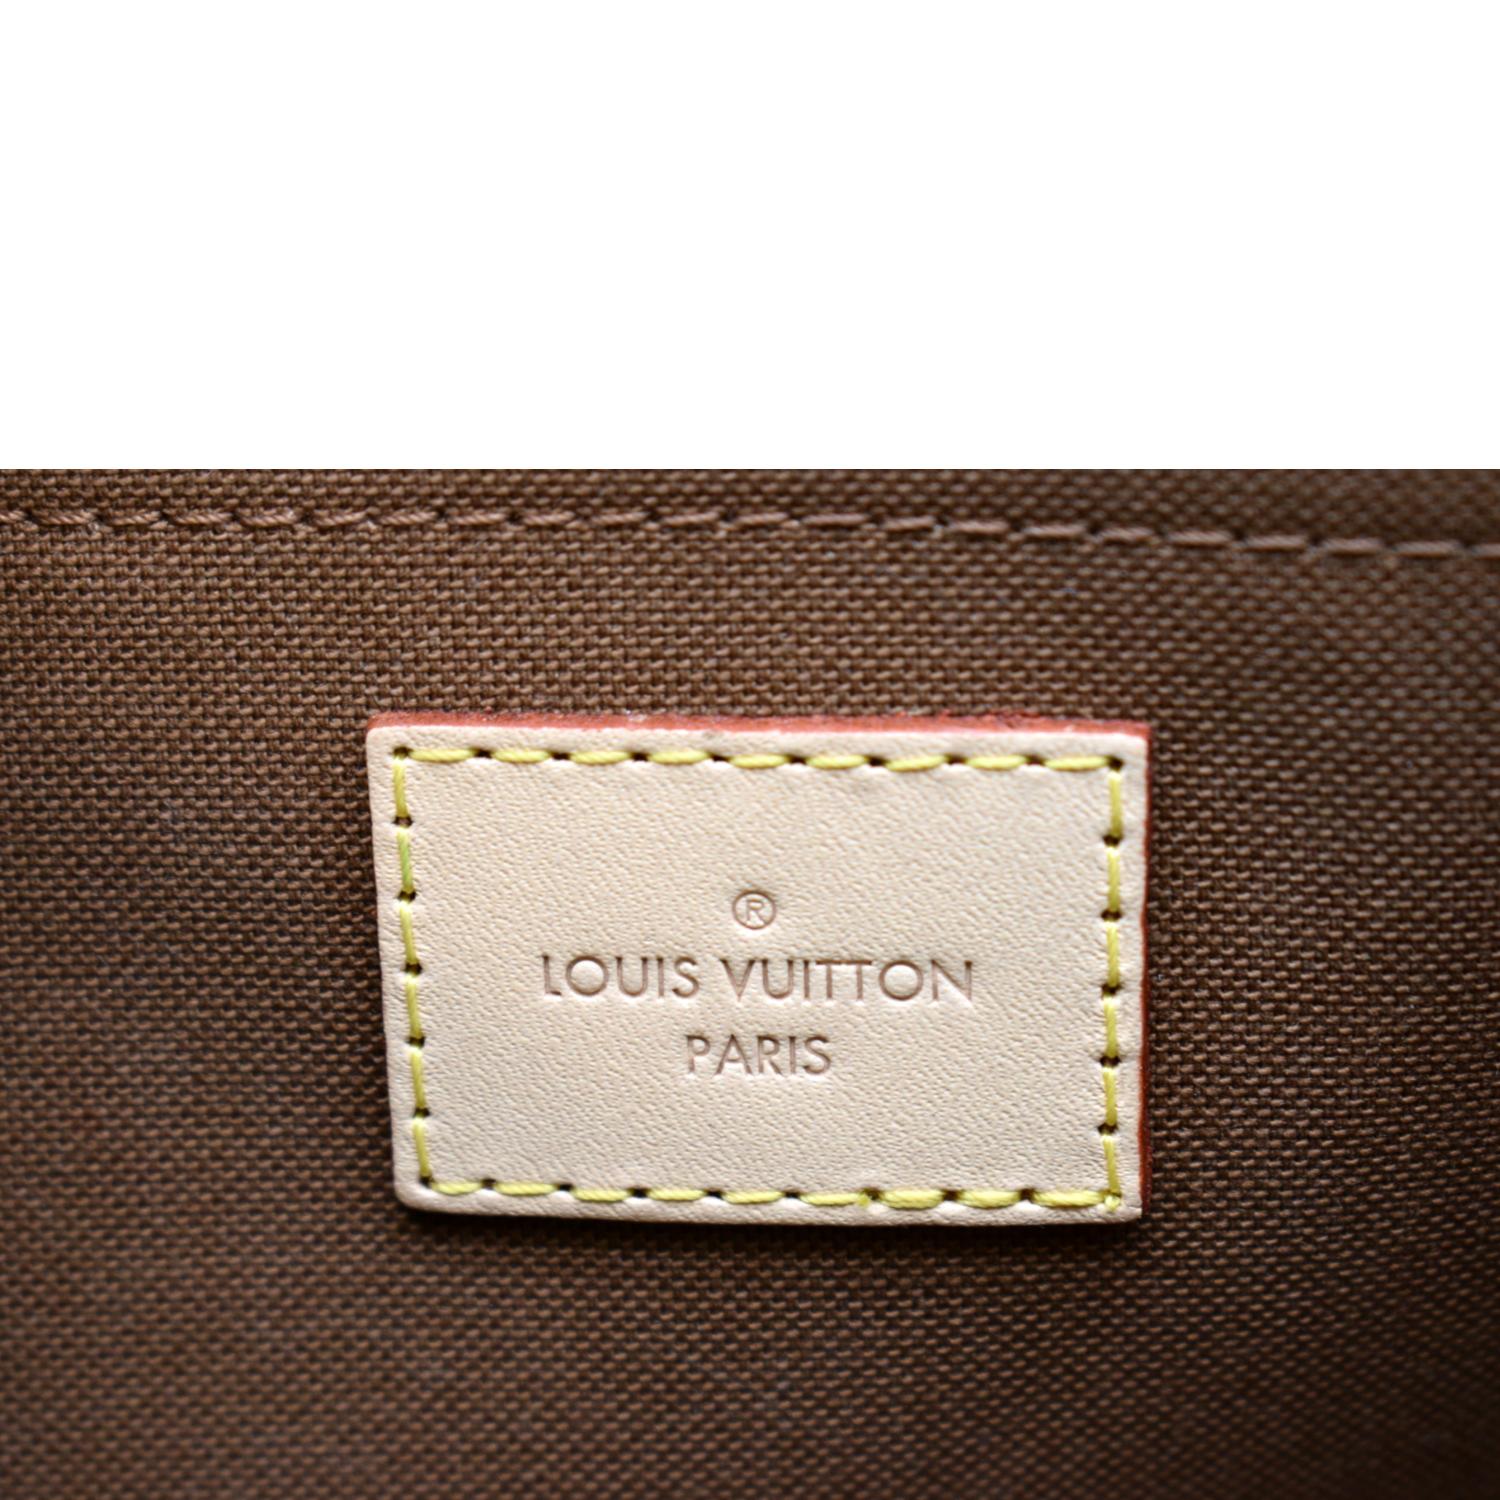 SOLd) Louis Vuitton Multi Pochette 🍀🍀🍀rare and popular